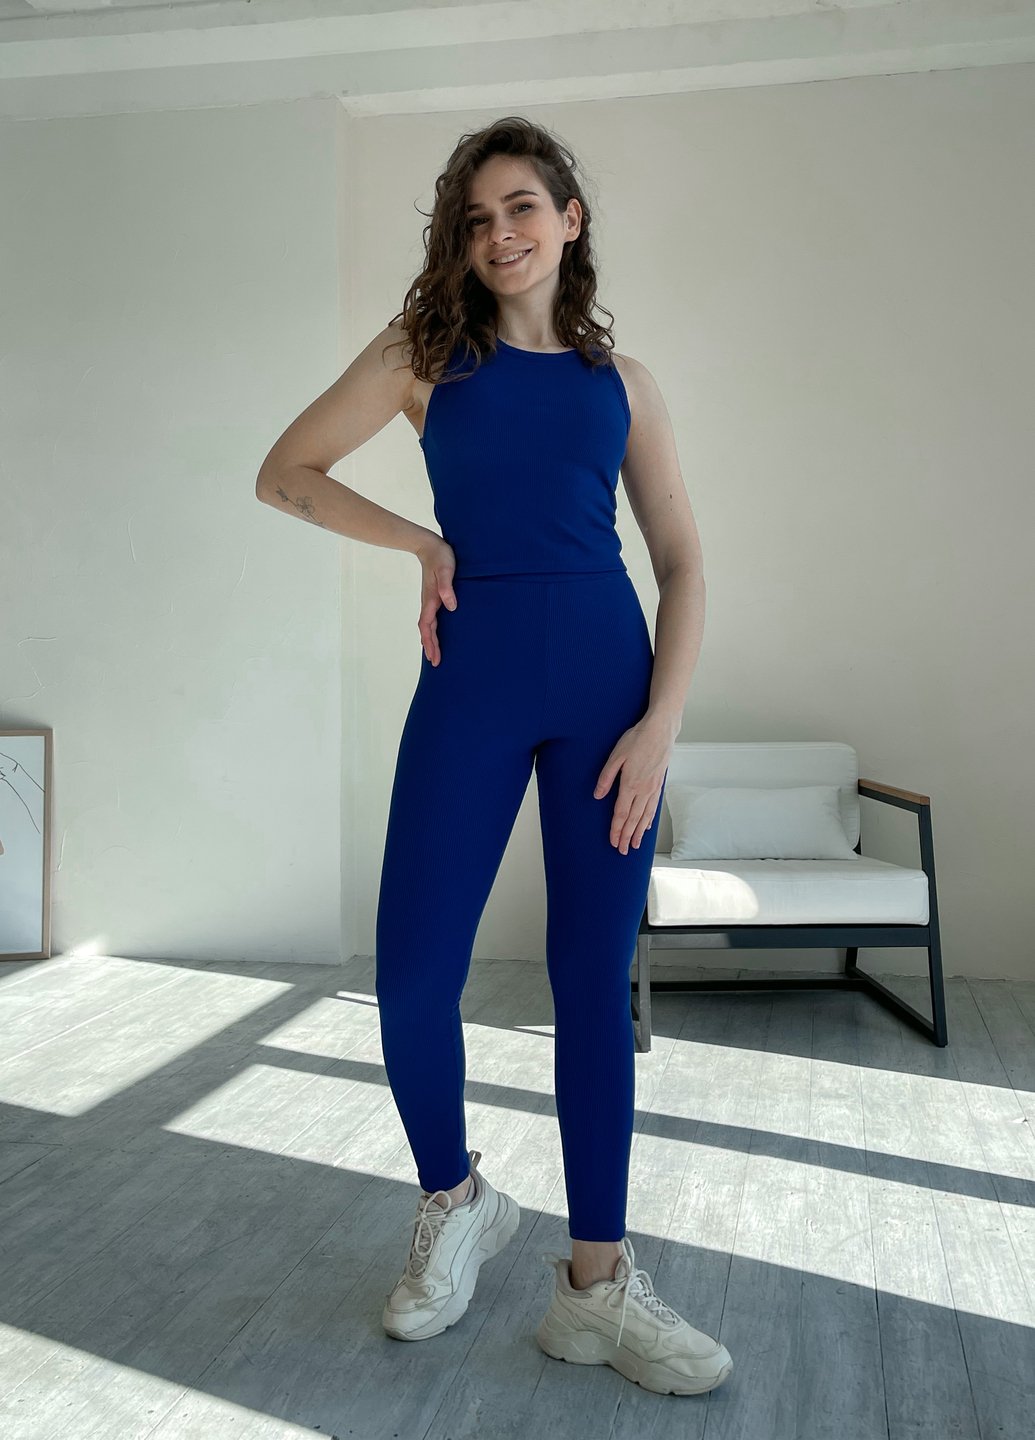 Купить Костюм женский в рубчик топ с лосинами синий Merlini Сотто 100000447, размер XS-M (40-44) в интернет-магазине